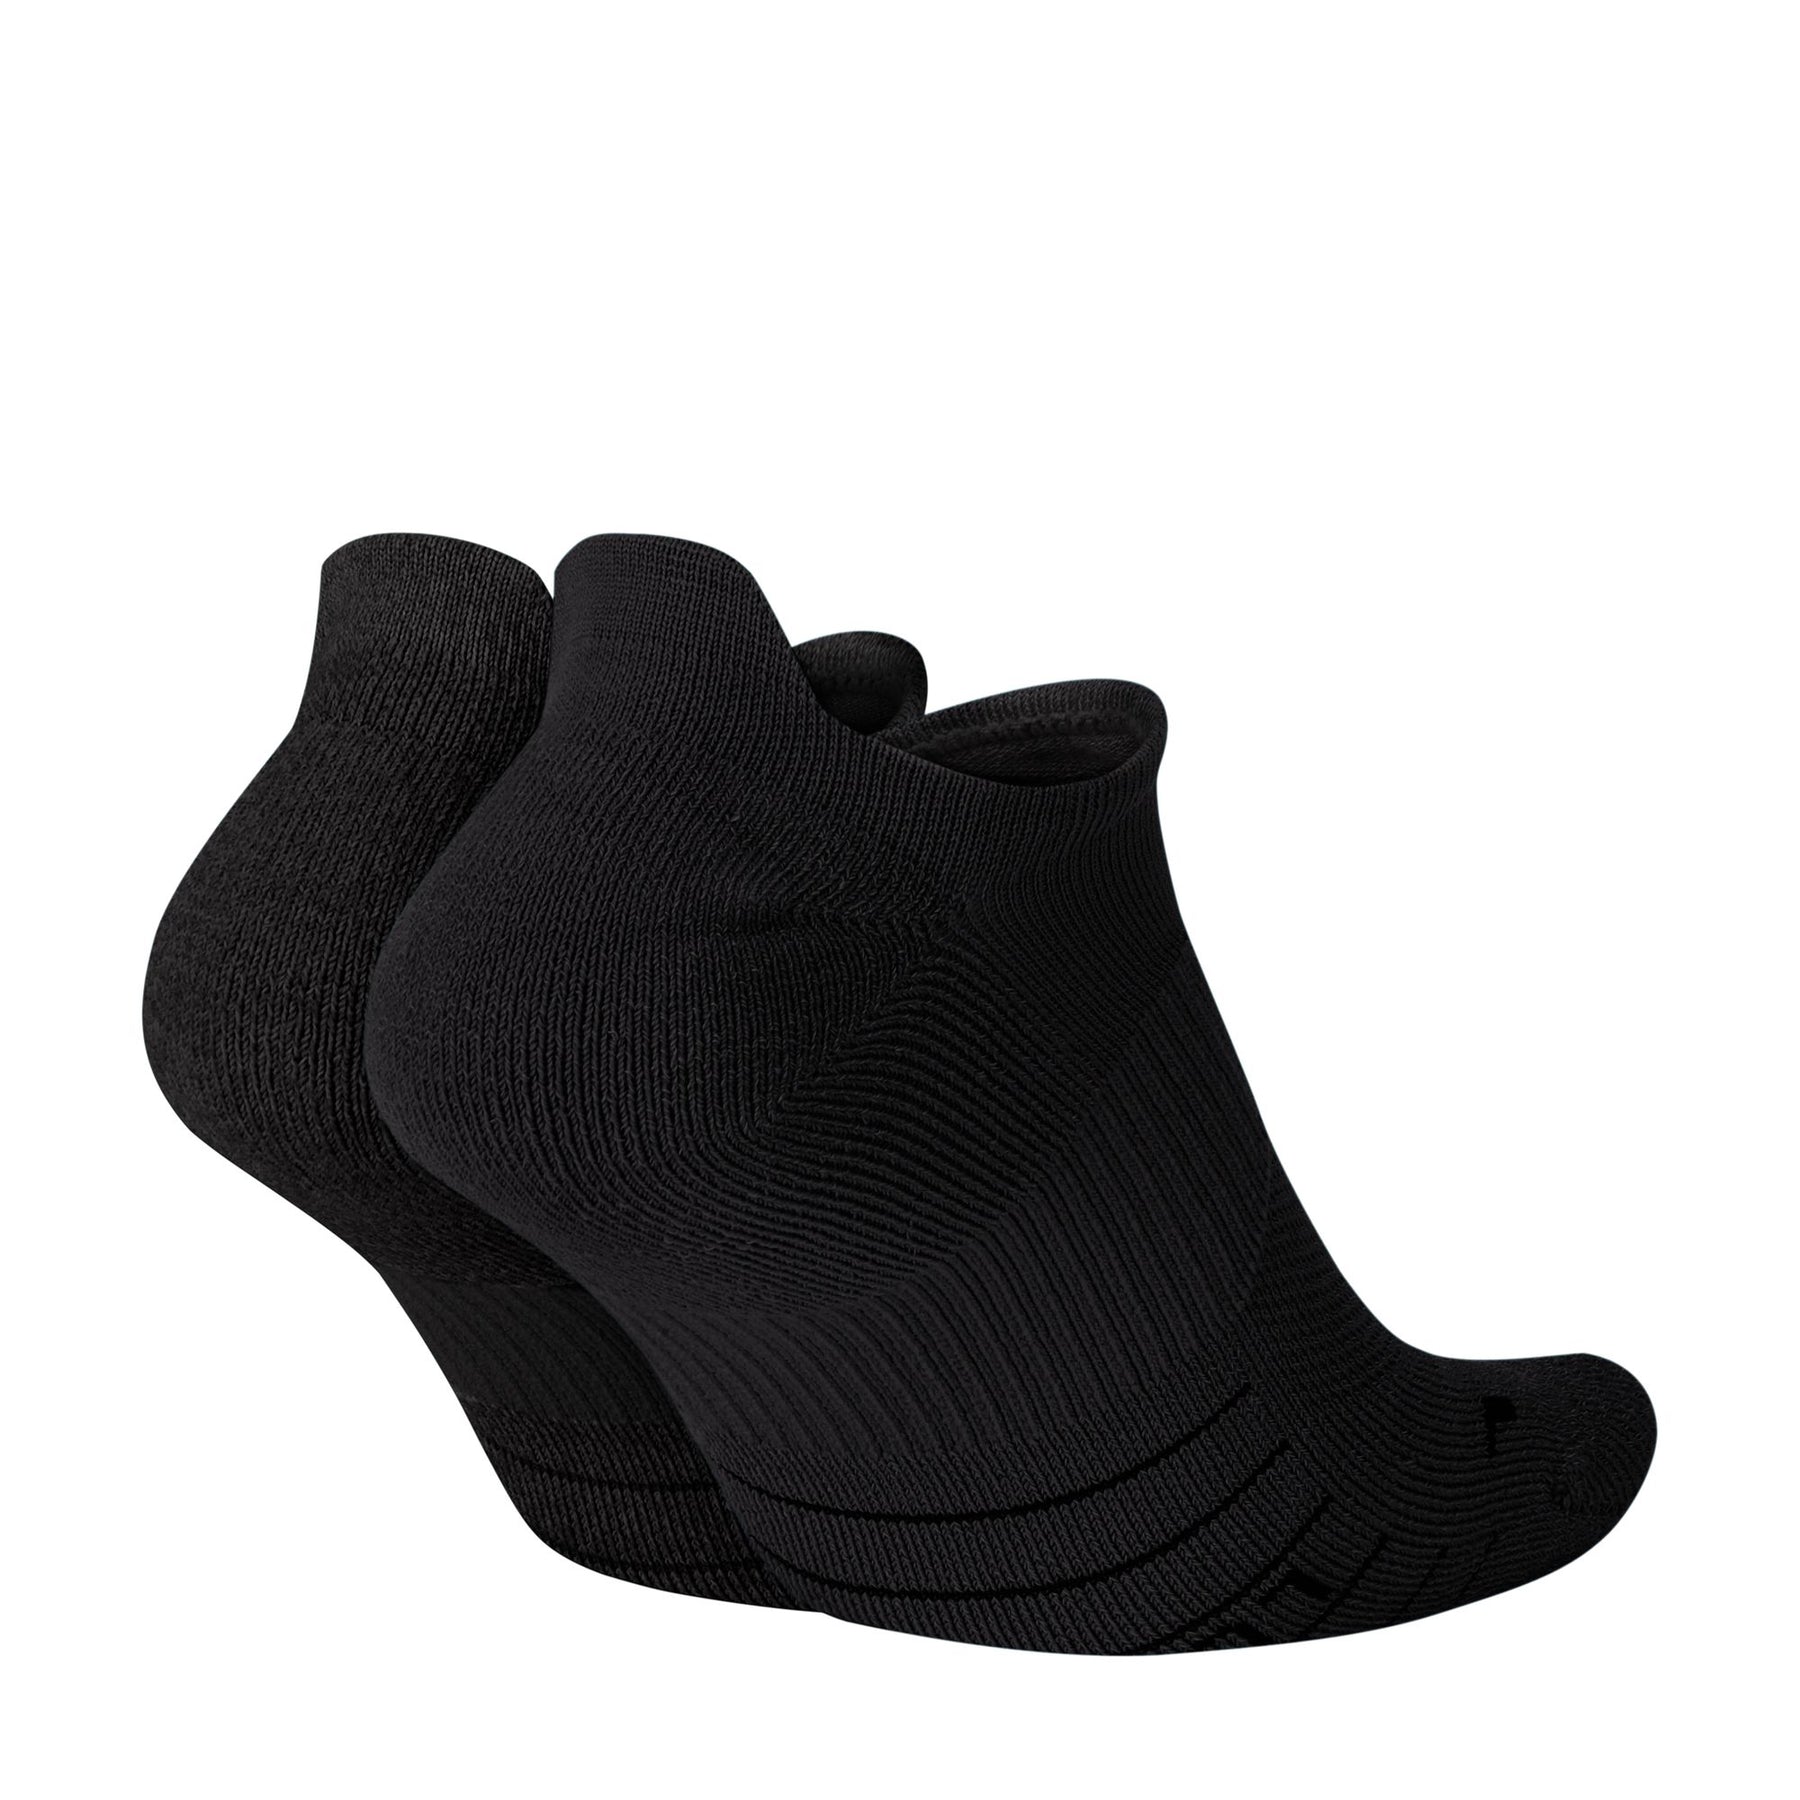 Nike Multiplier Running No-Show Socks - Black (Unisex)